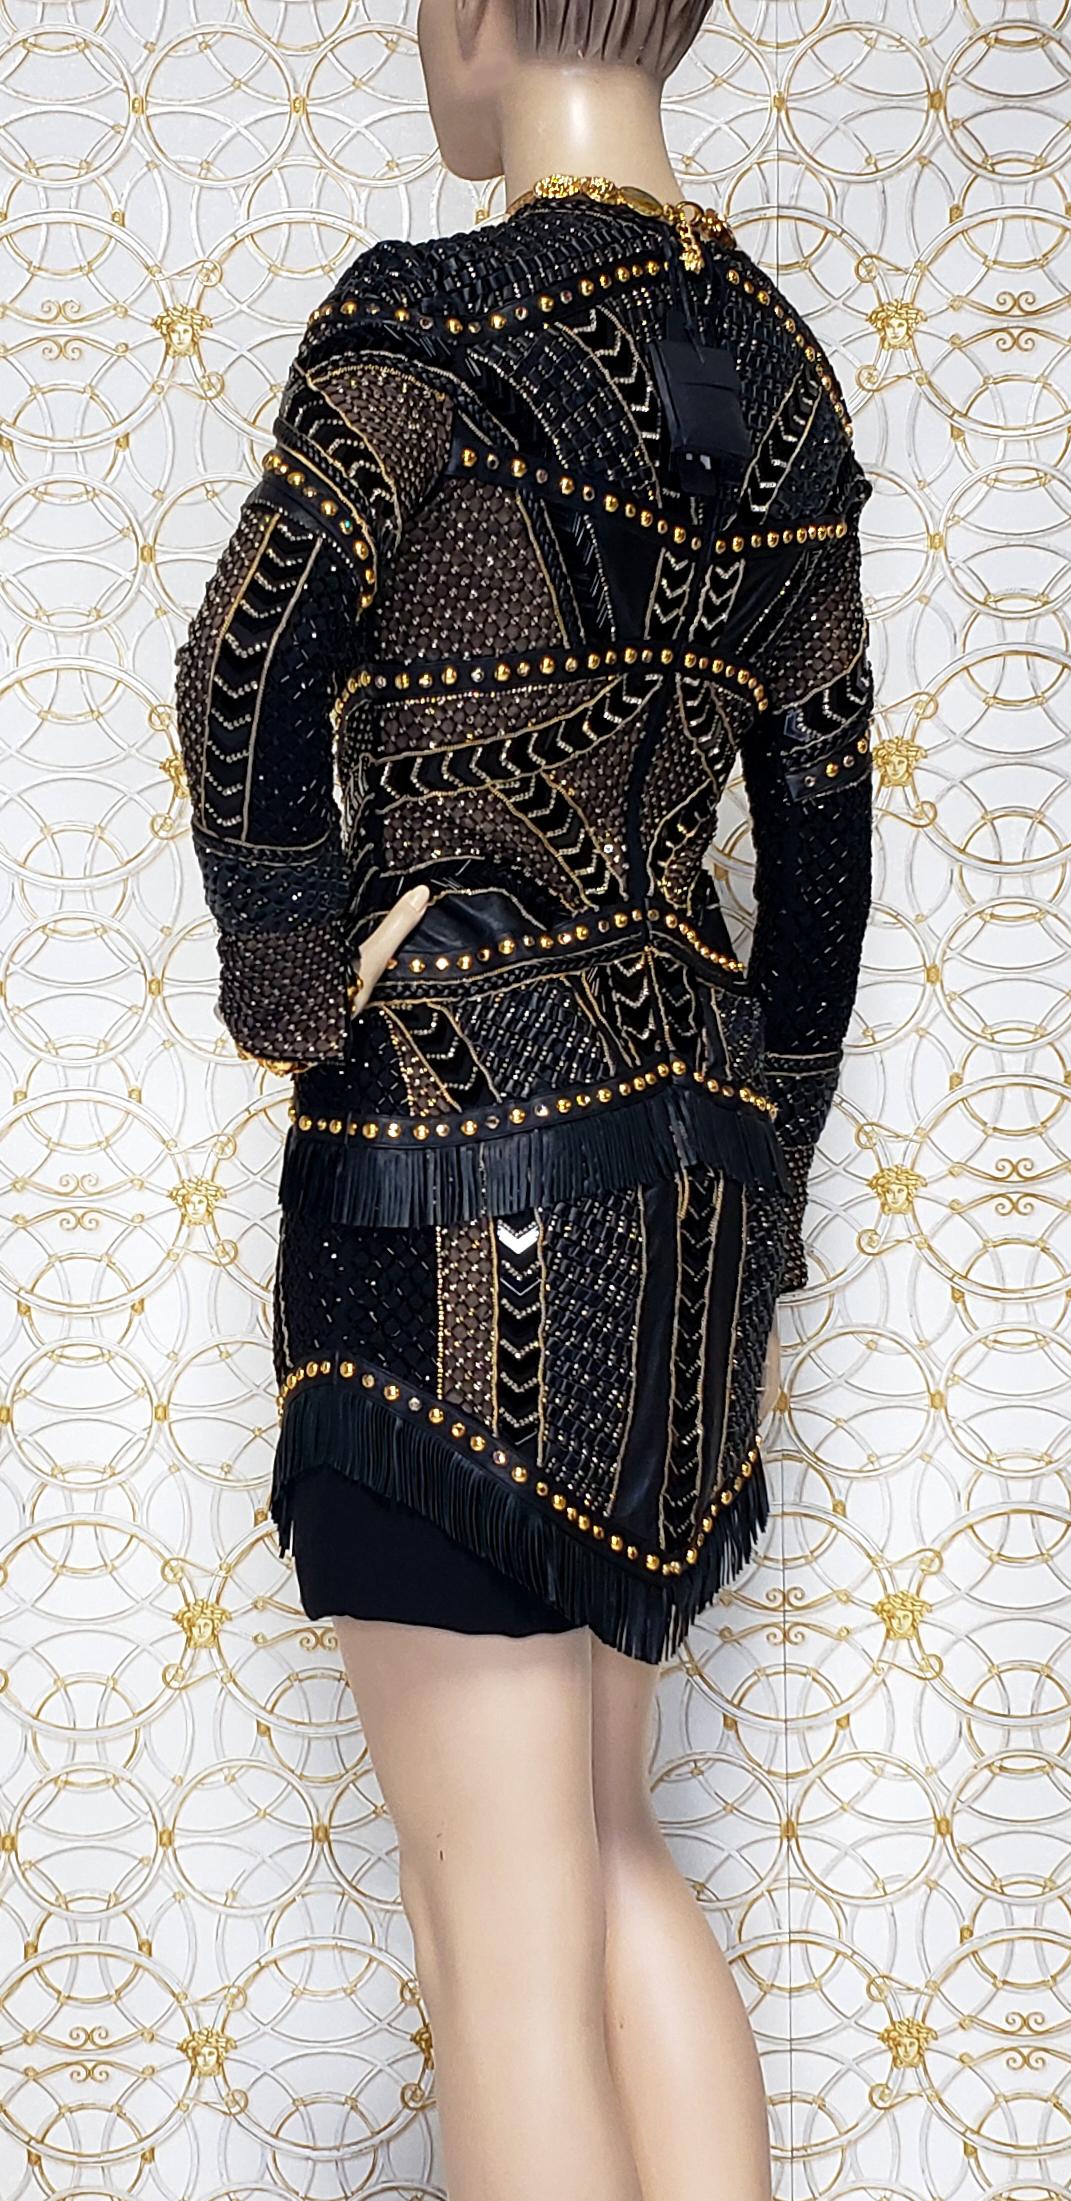 New Versace Crystal and Stud Embellished Leather Dress w/ Fringe Damen